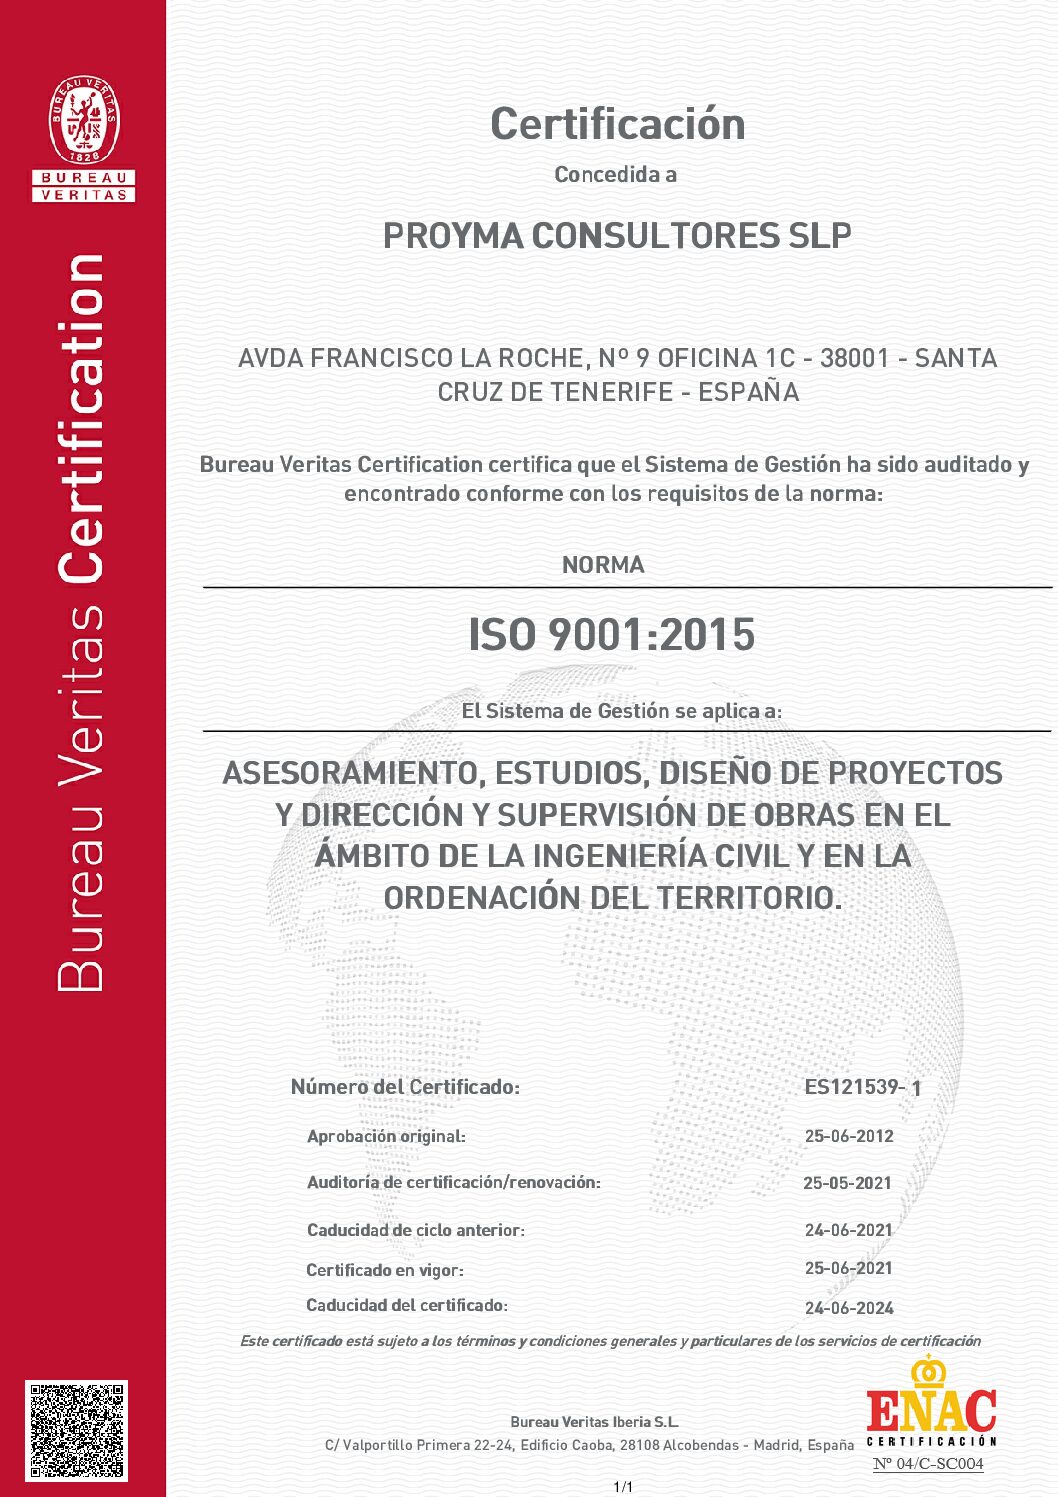 Sistema de Gestión de la Calidad certificado bajo la norma ISO 9001:2008